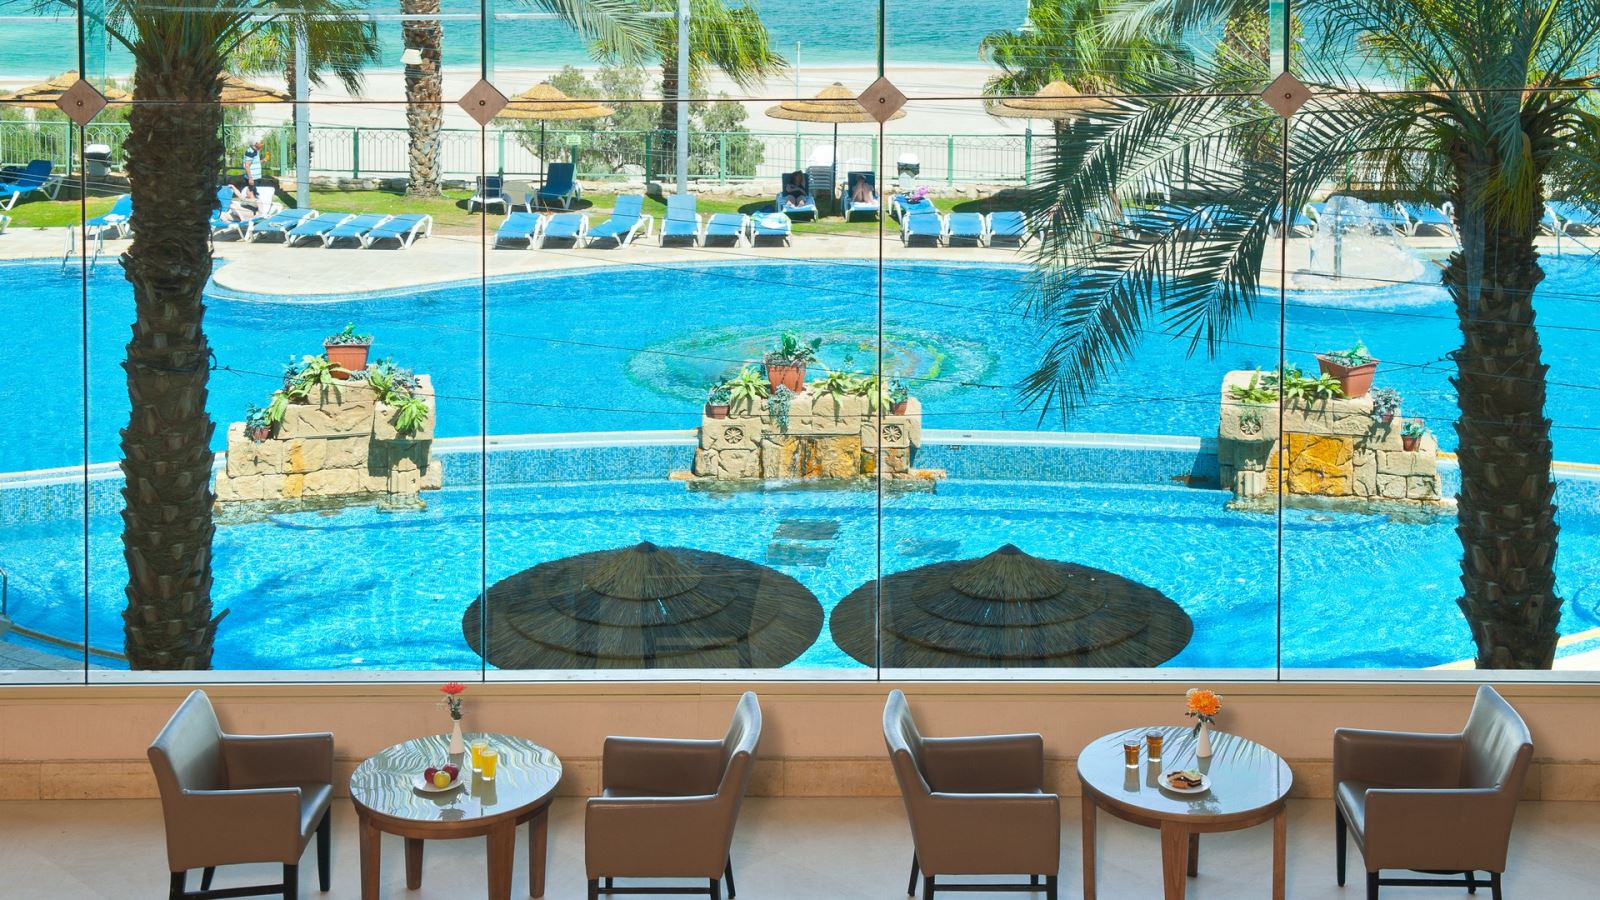 בואו ליהנות מחופשה רגועה ומפנקת במלון לאונרדו פלאזה ים המלח!